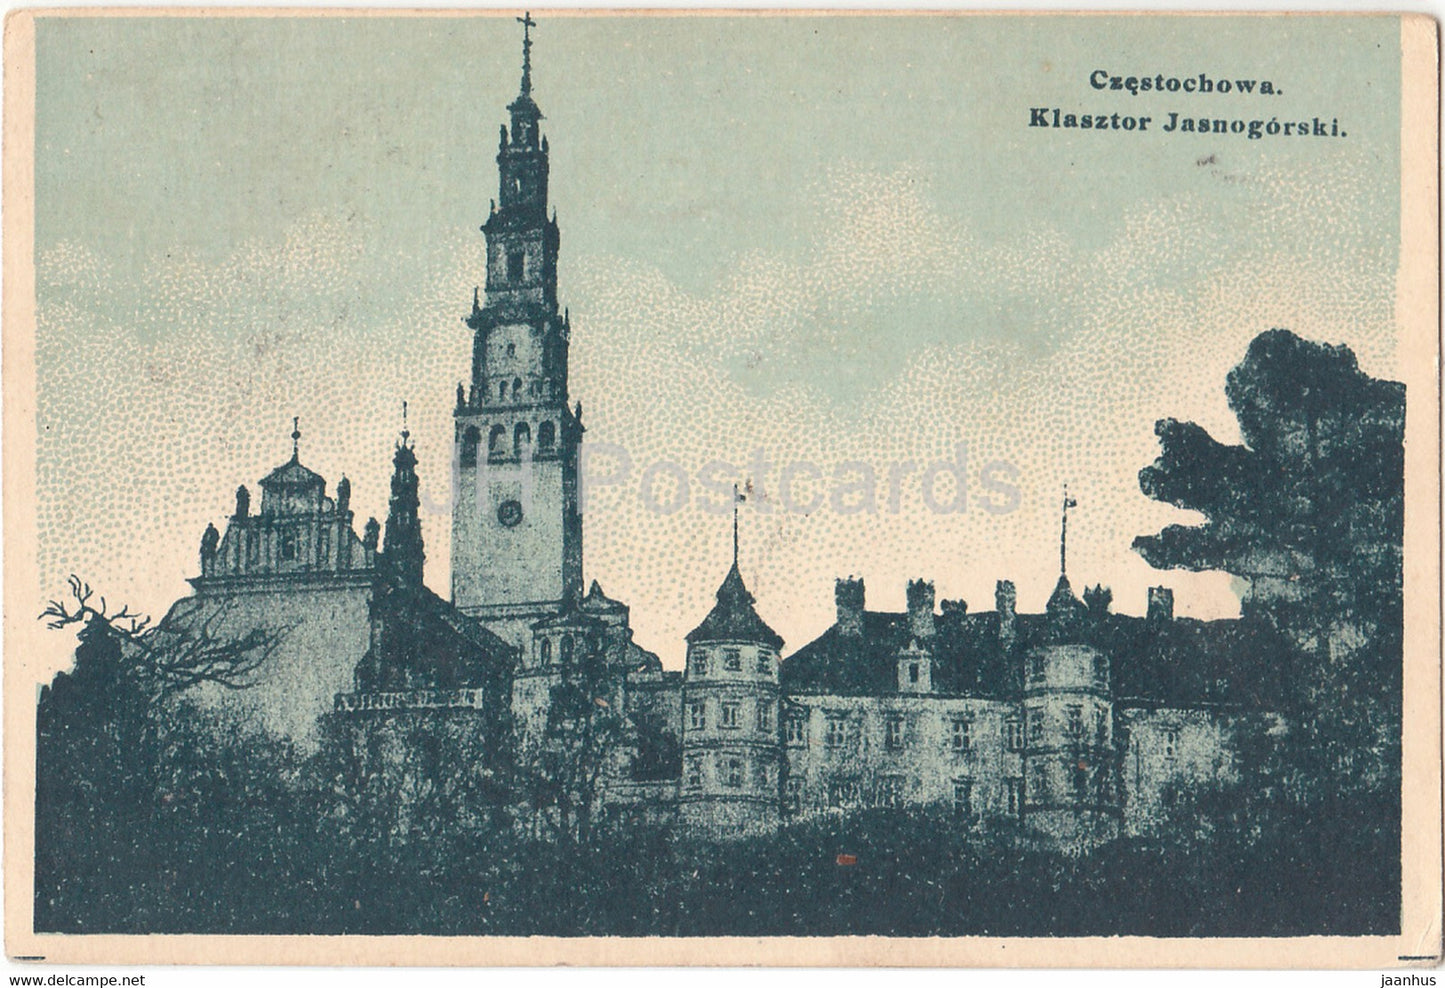 Czestochowa - Klasztor Jasnogorski - monastery - old postcard - Poland - unused - JH Postcards